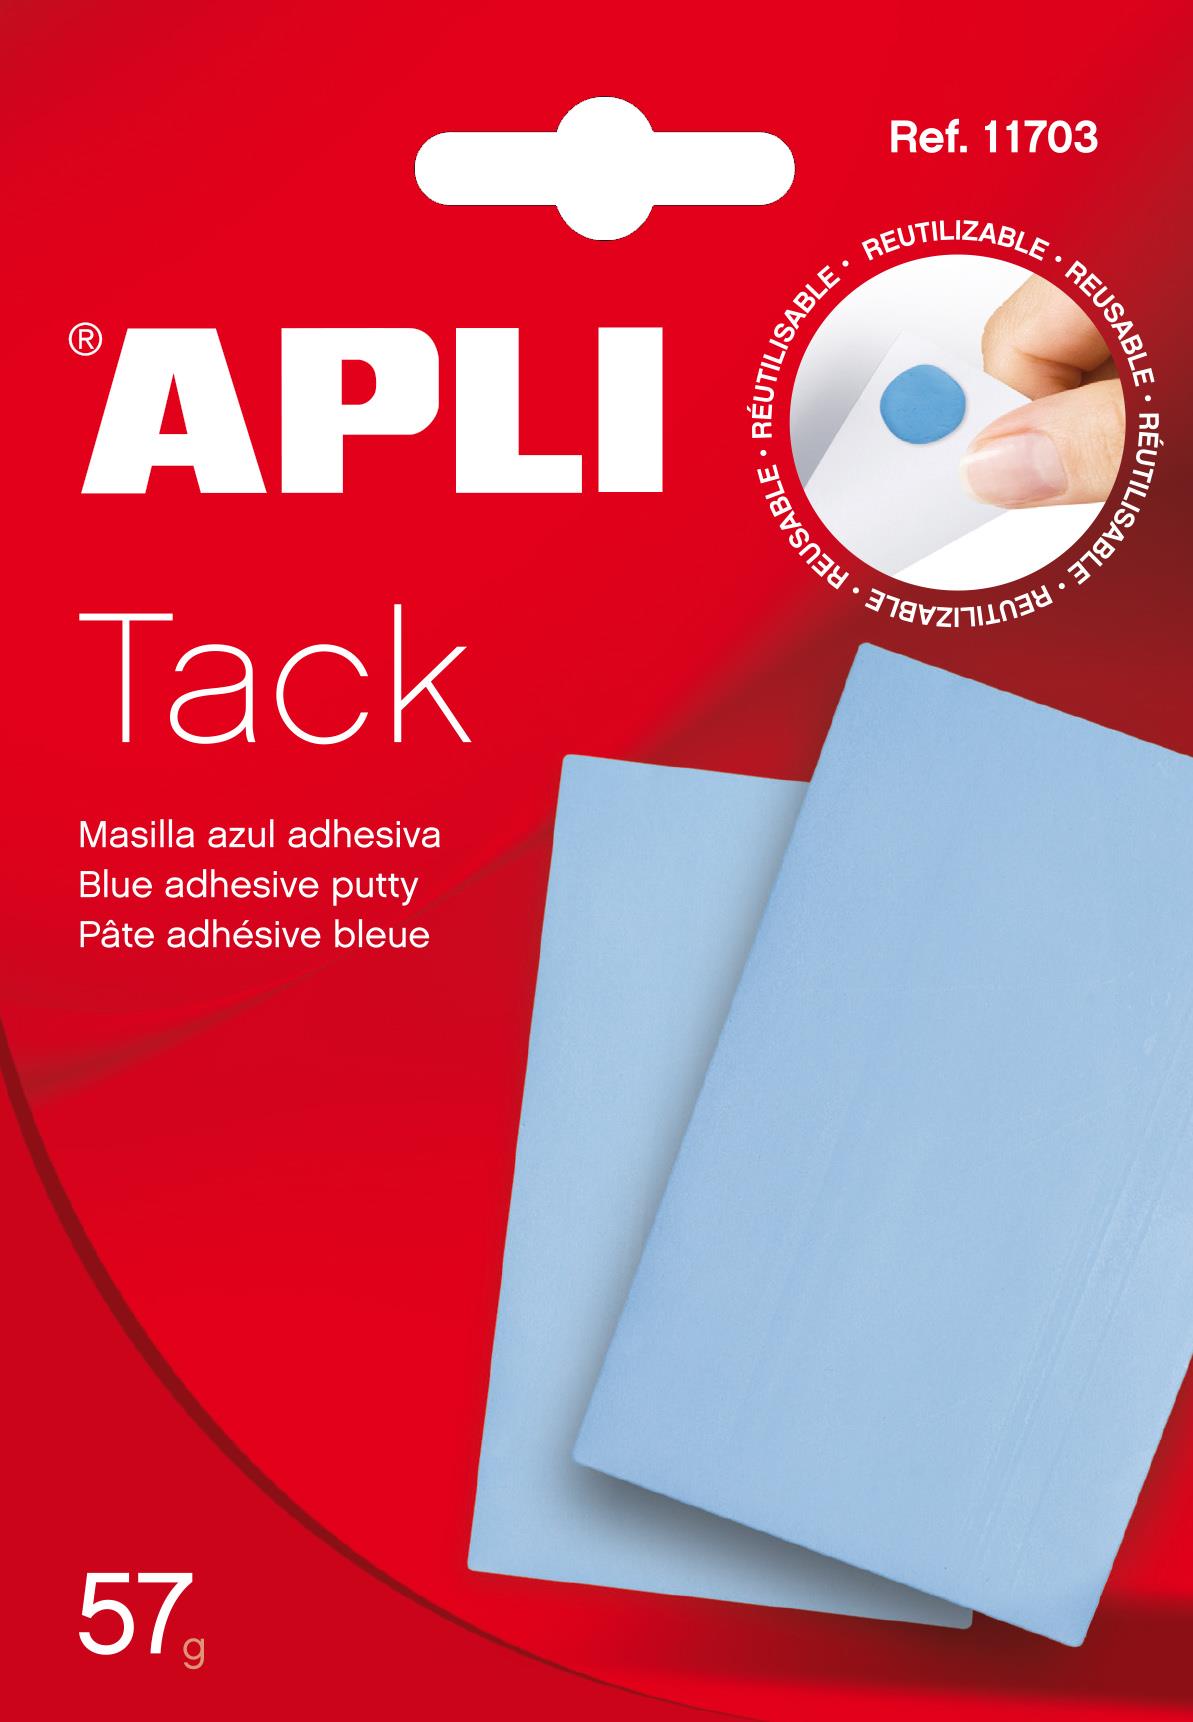 Blu Tack - Masilla adhesiva original, Paquete de 4